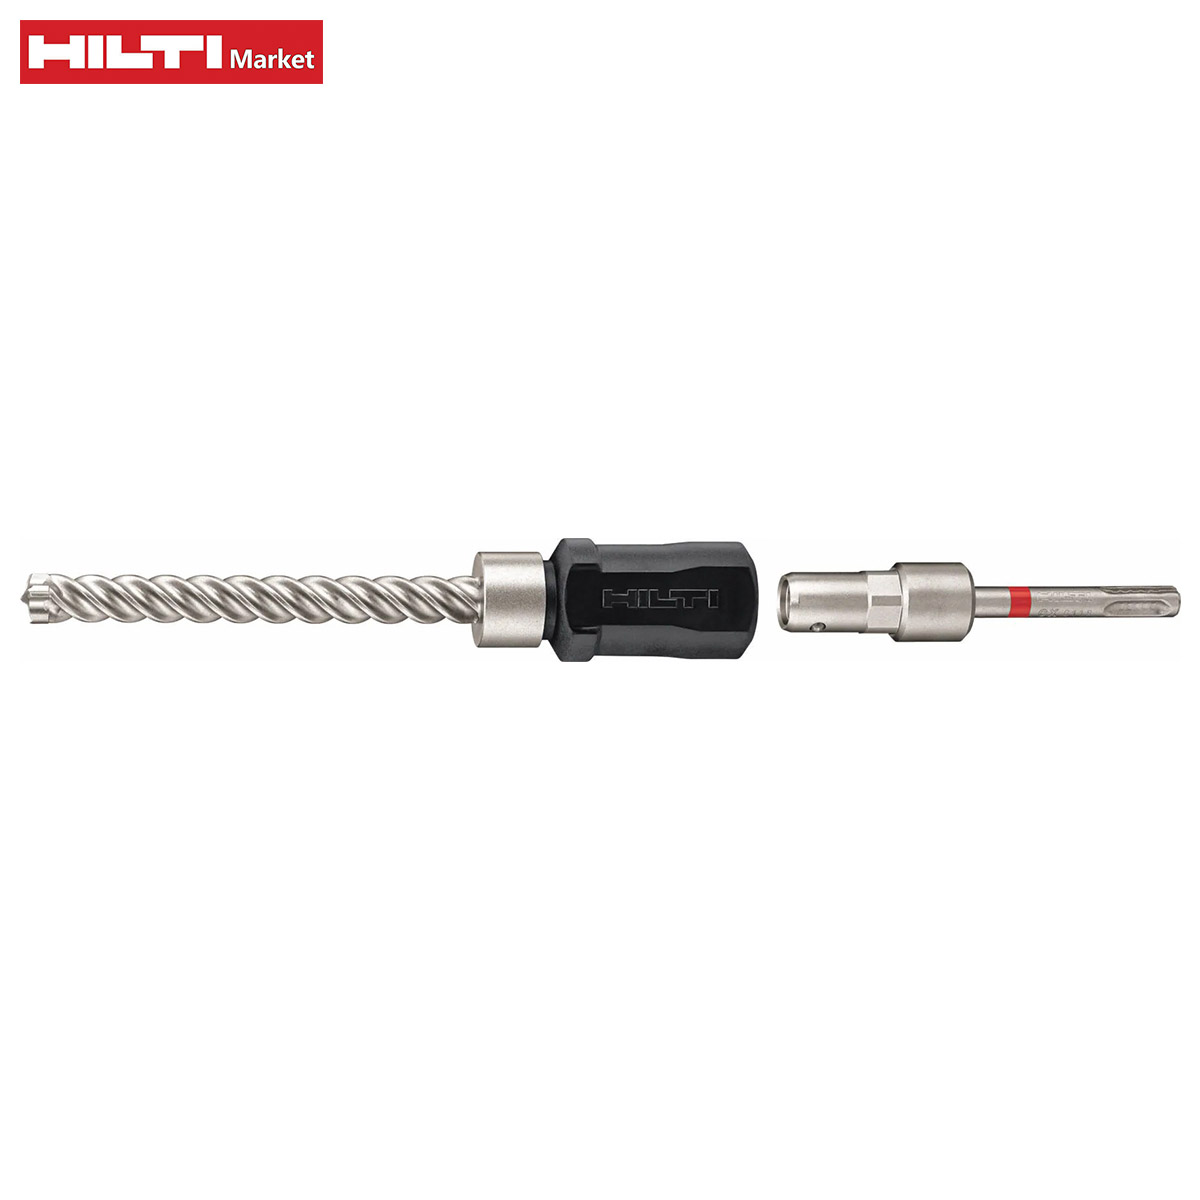 HILTI drill adjustment tool HILTI KB-TZ TE -CX-B